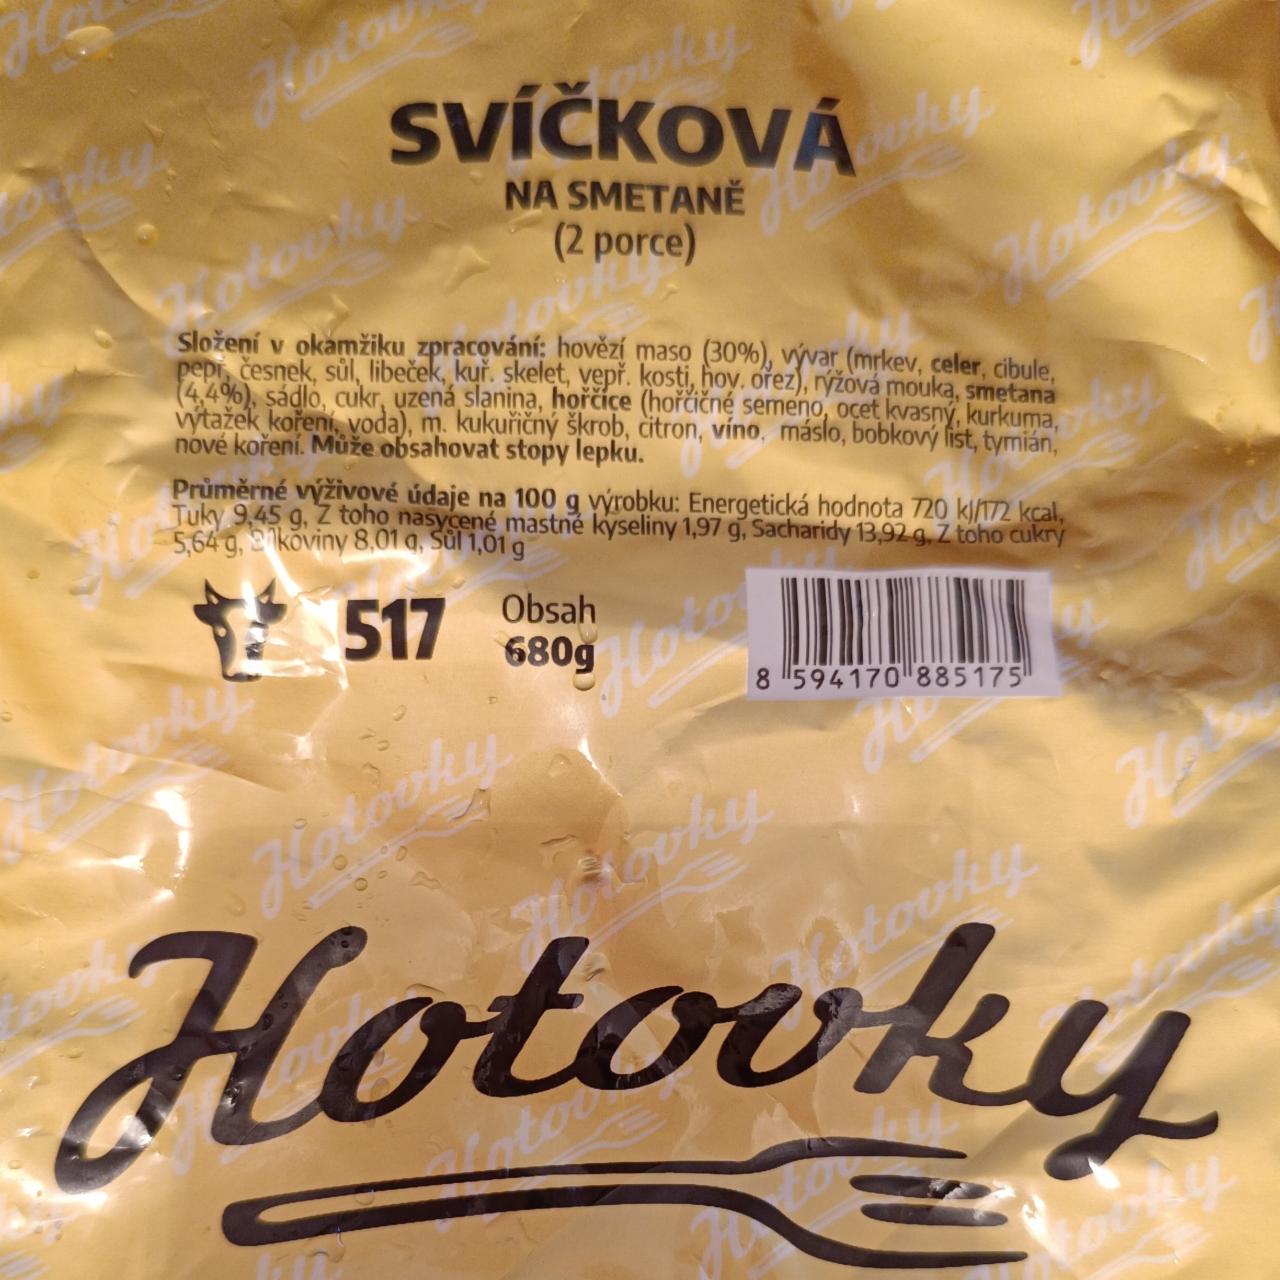 Fotografie - Svíčková na smetaně, Hotovky.cz